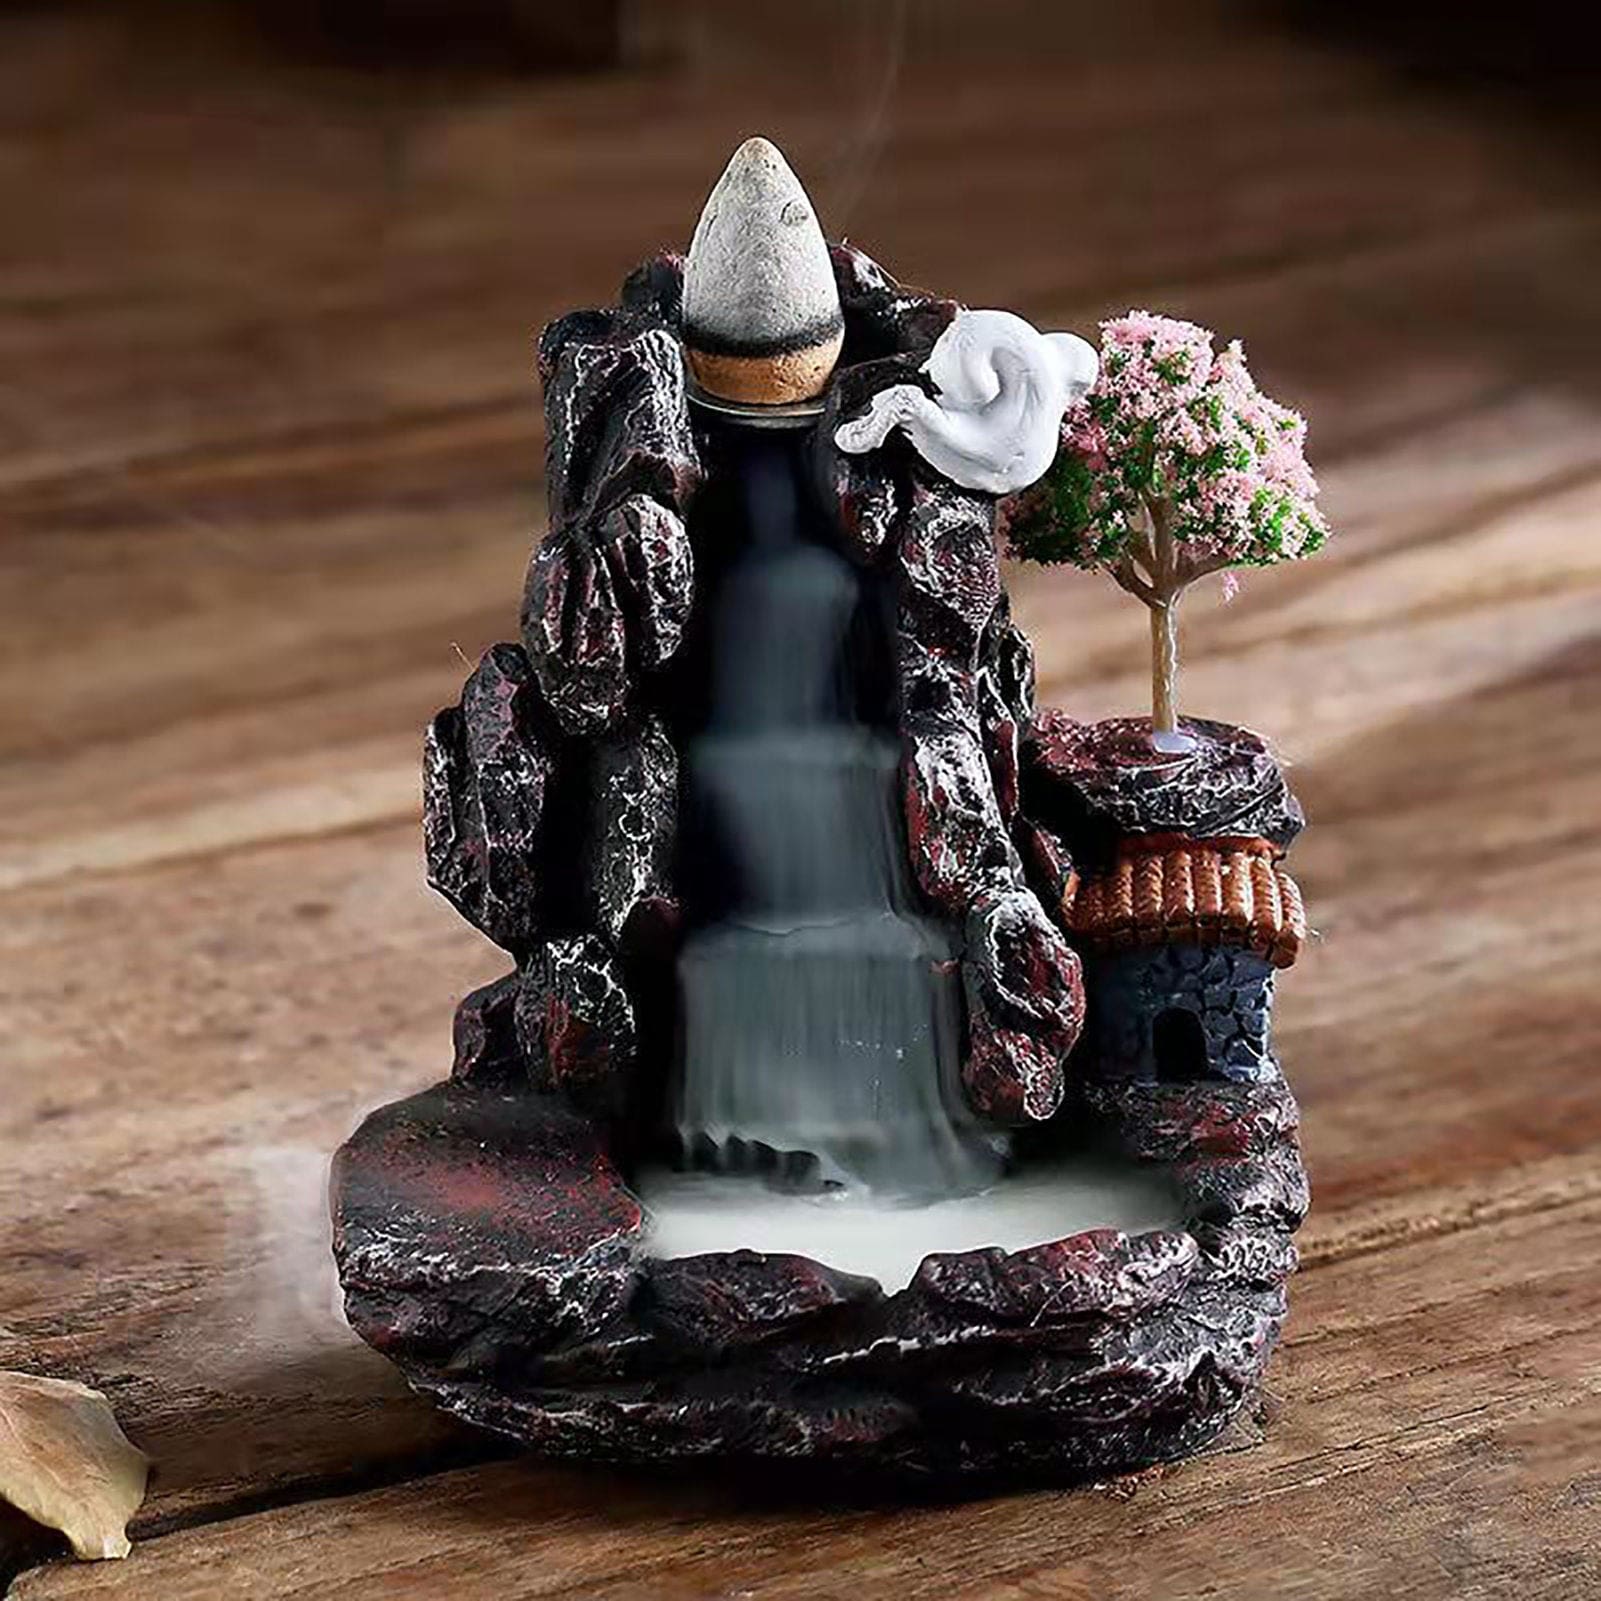 Tiny Village Backflow Incense Burner - incense burner